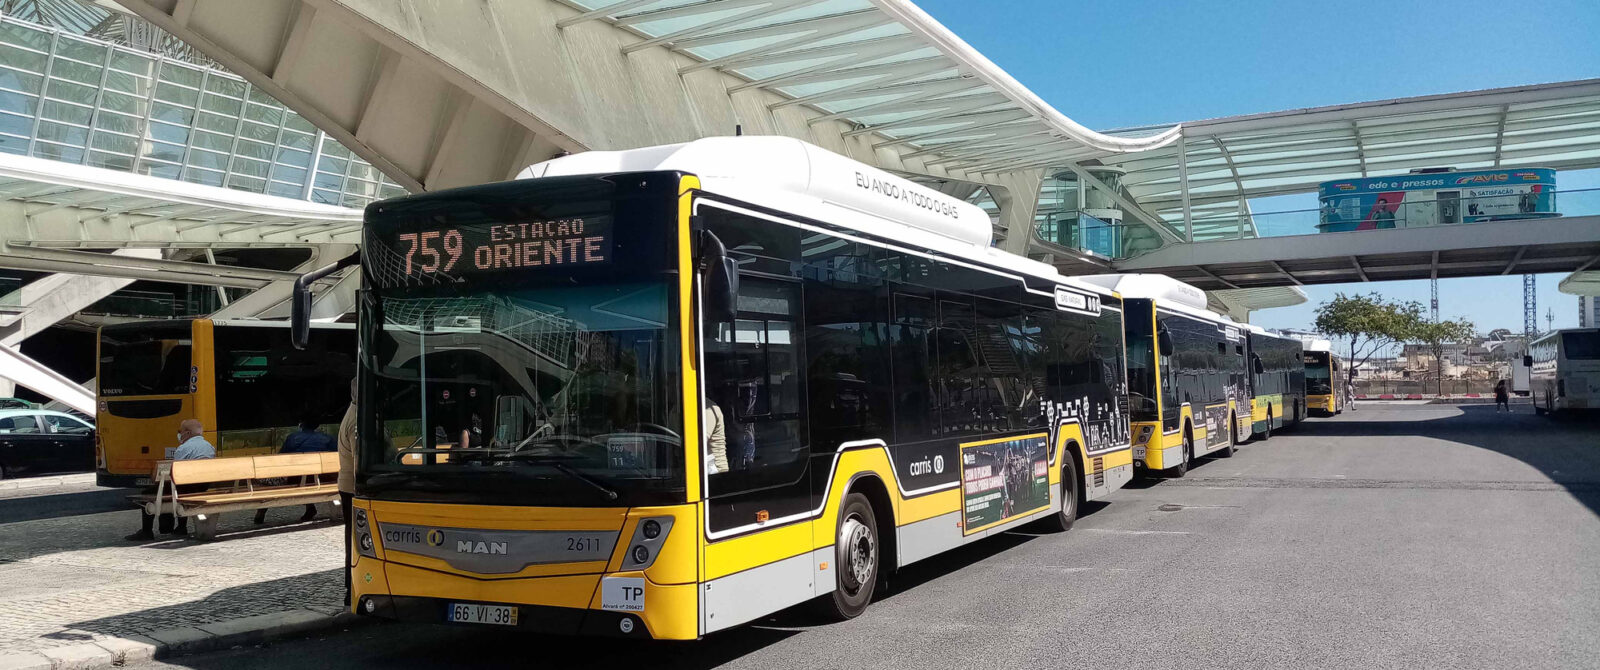 É possível descarbonizar os autocarros urbanos em Portugal?